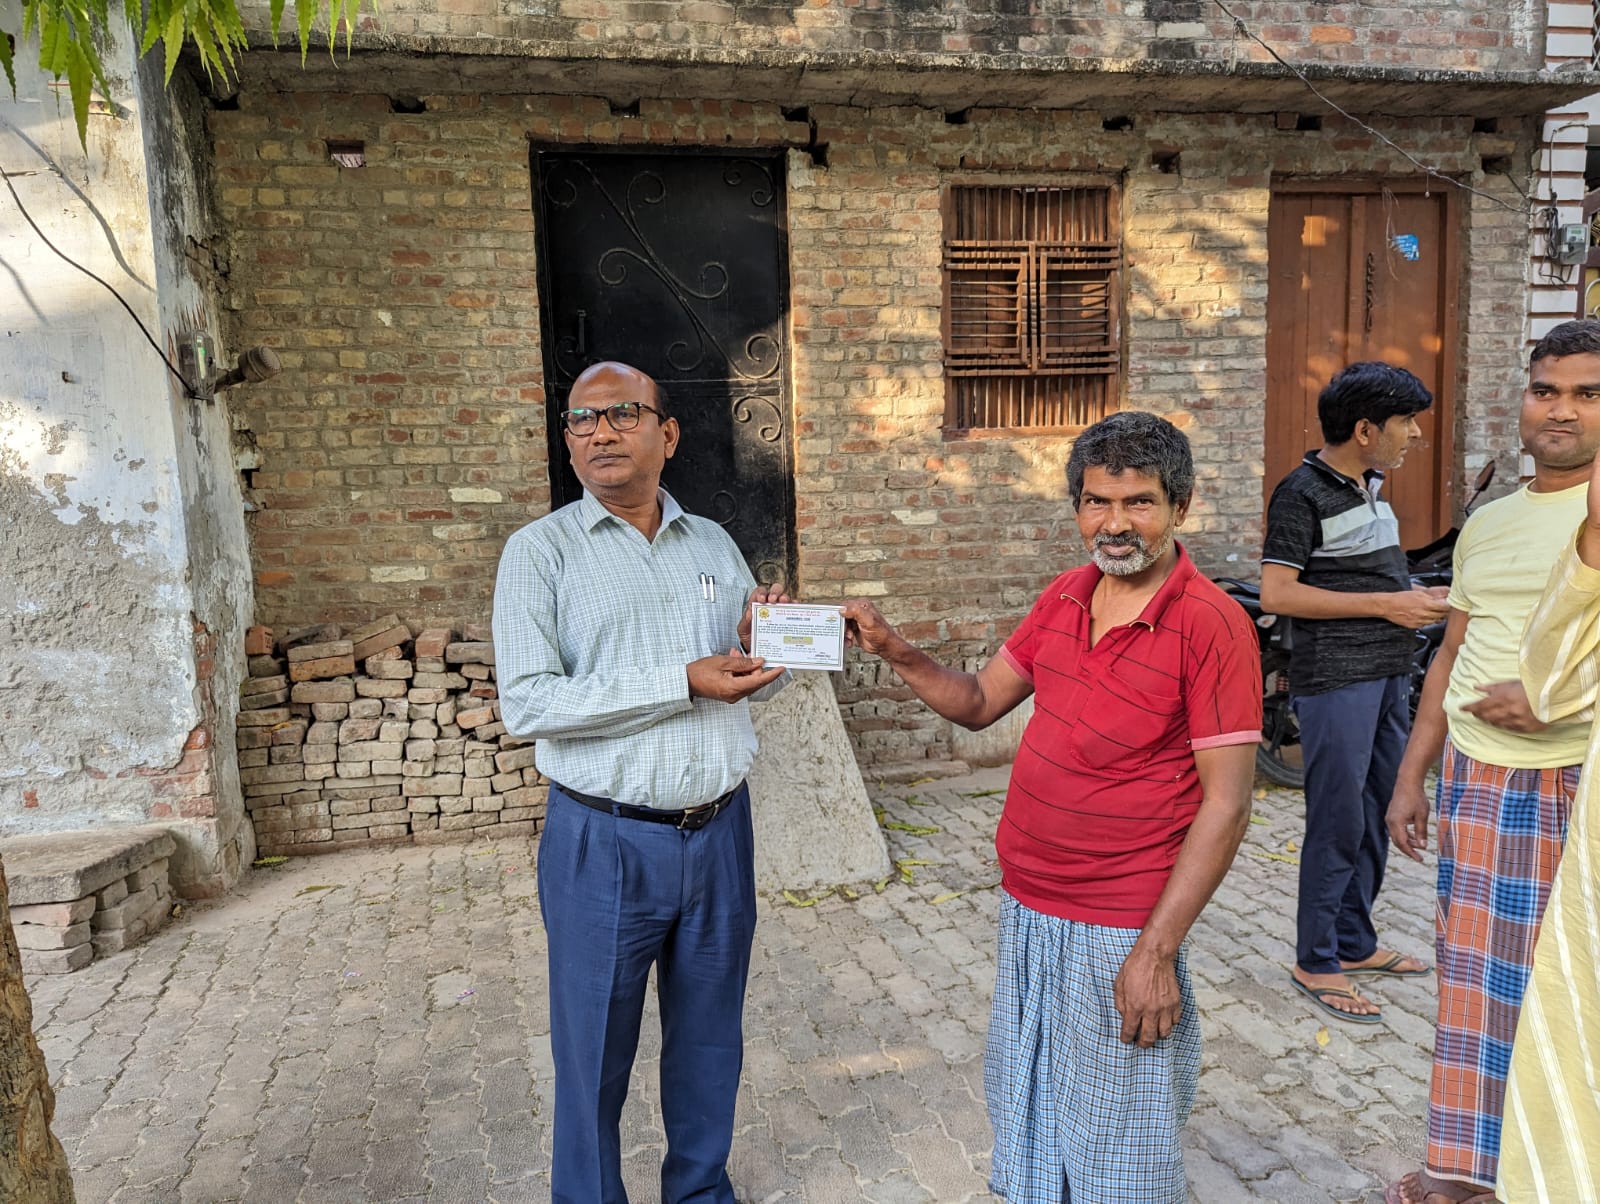 उपजिला निर्वाचन अधिकारी मोहनलाल गुप्त ने मतदाताओं को दिया आमंत्रण पत्र